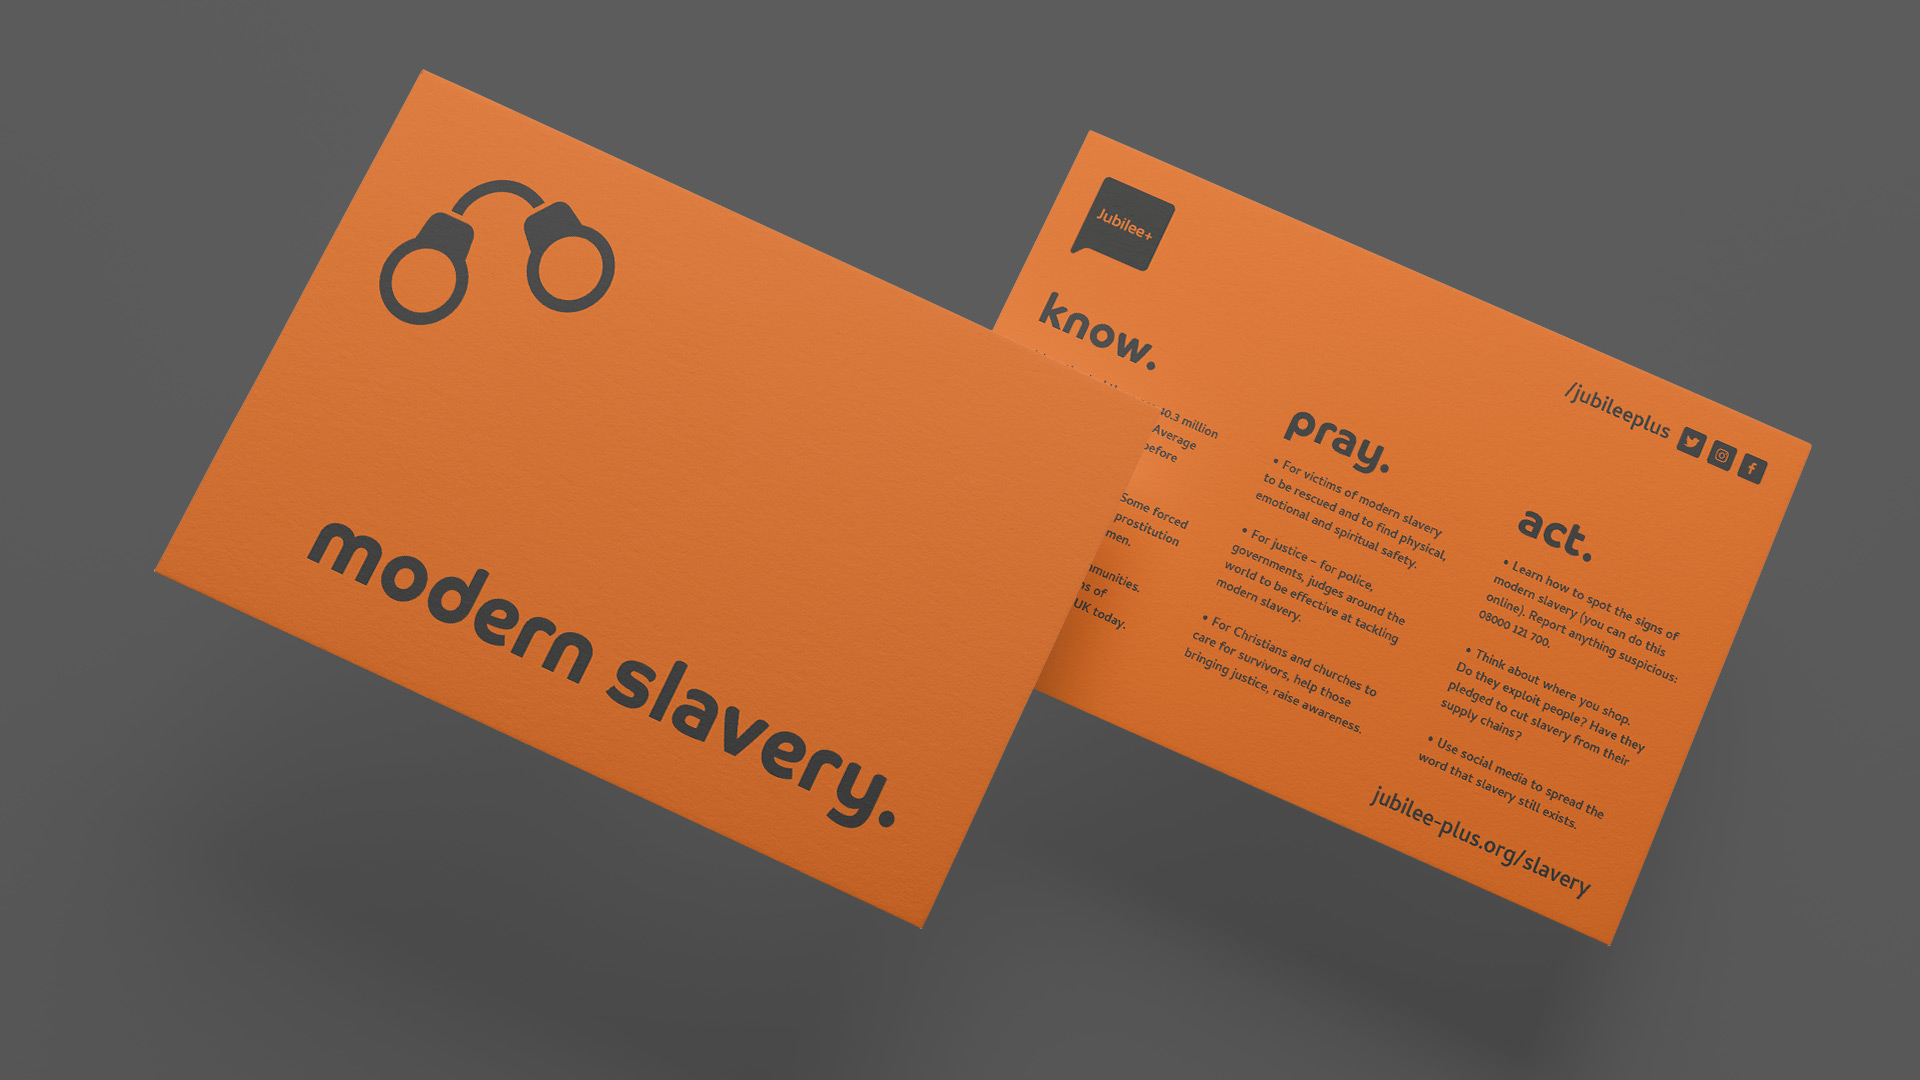 Jubilee+ Modern Slavery information card